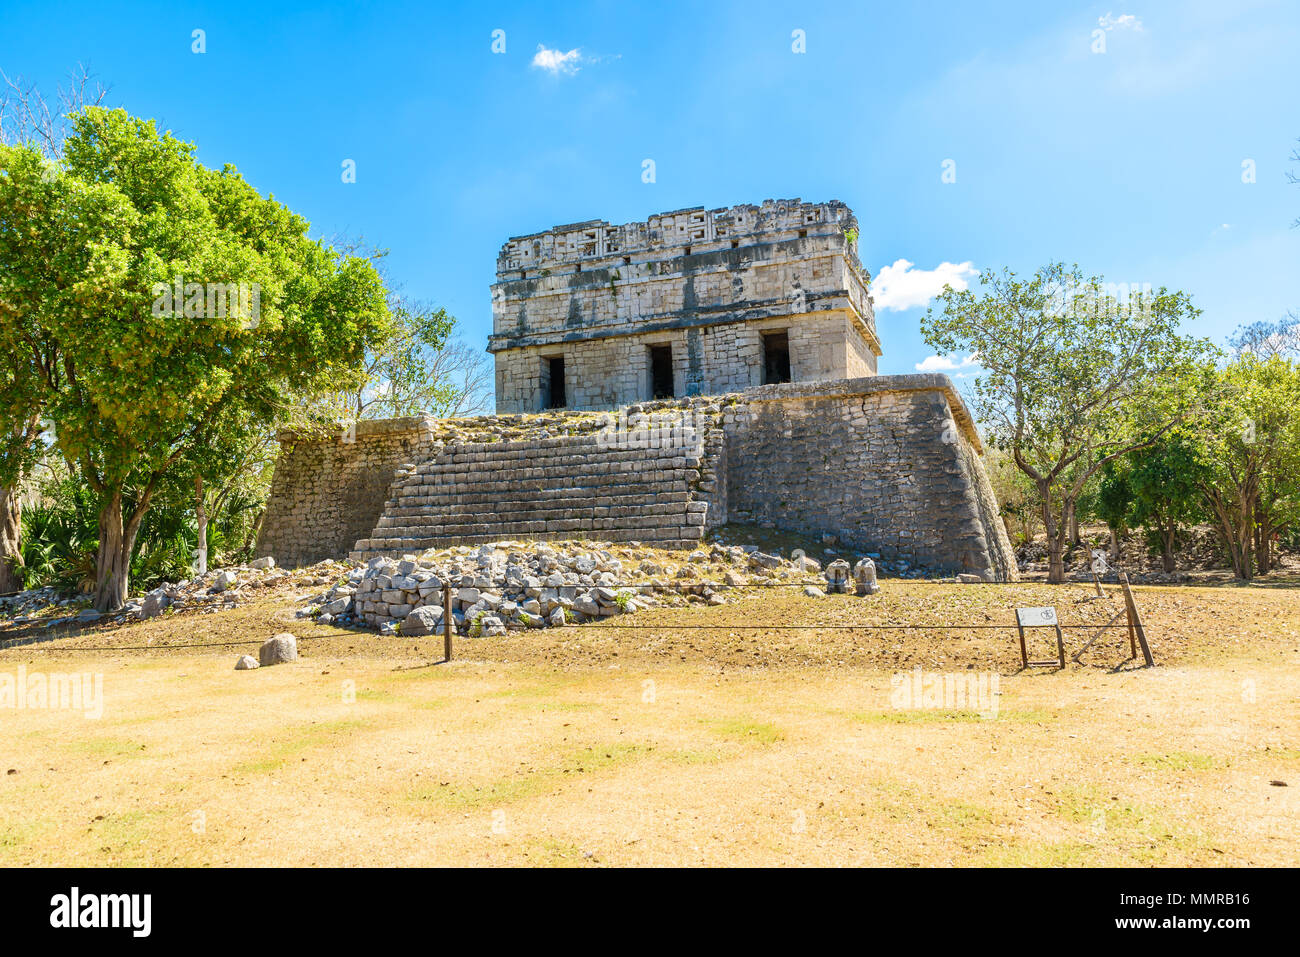 Old historic ruins of Chichen Itza, Yucatan, Mexico Stock Photo